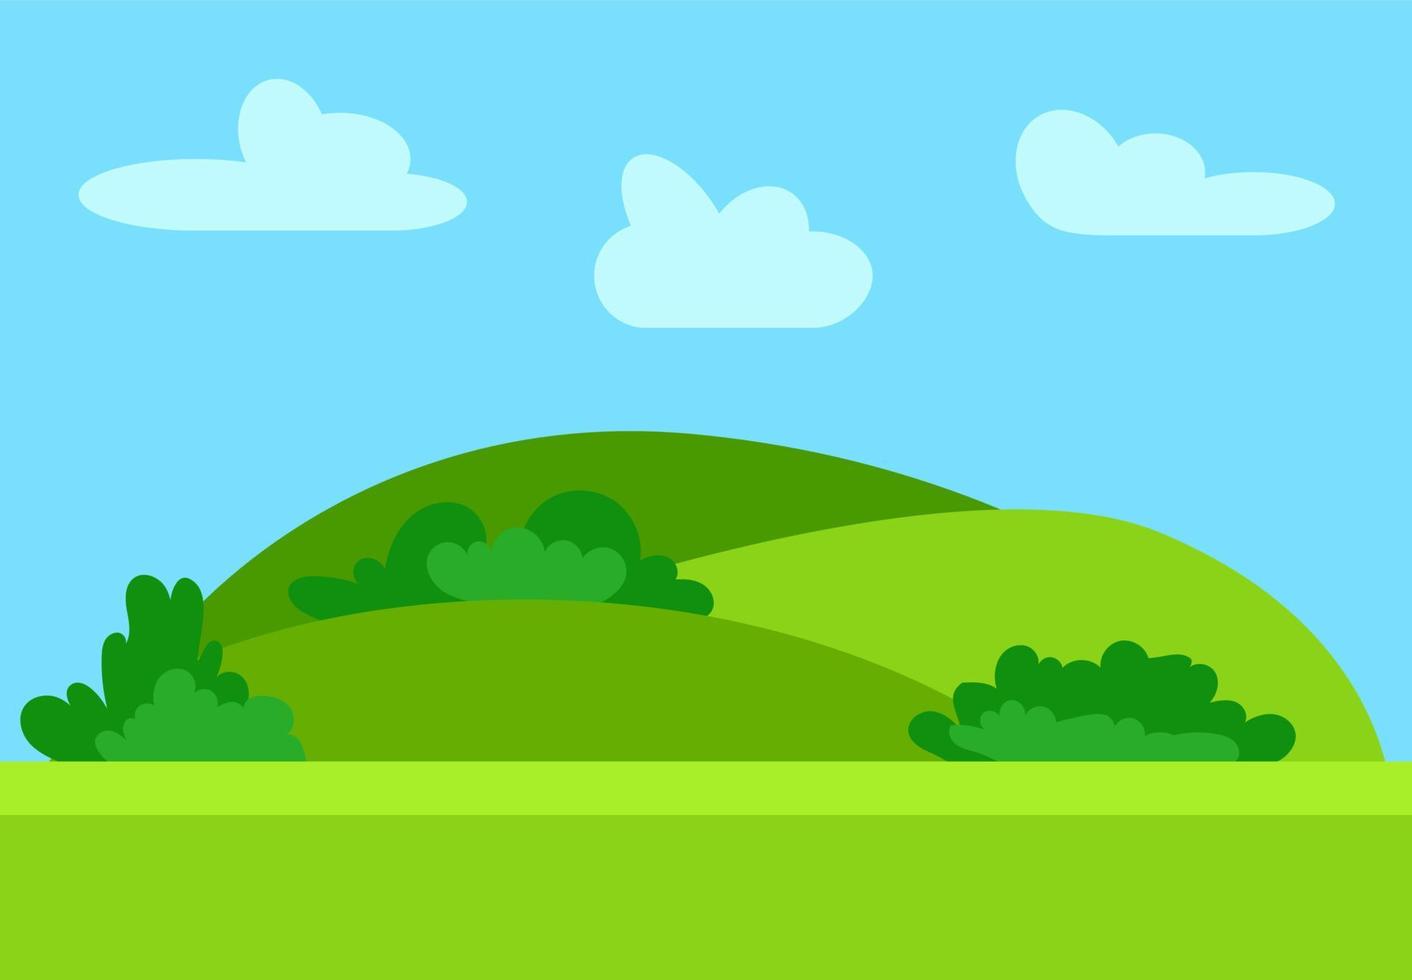 paisaje natural de dibujos animados al estilo plano con colinas verdes, cielo azul y nubes en los días soleados. ilustración vectorial vector